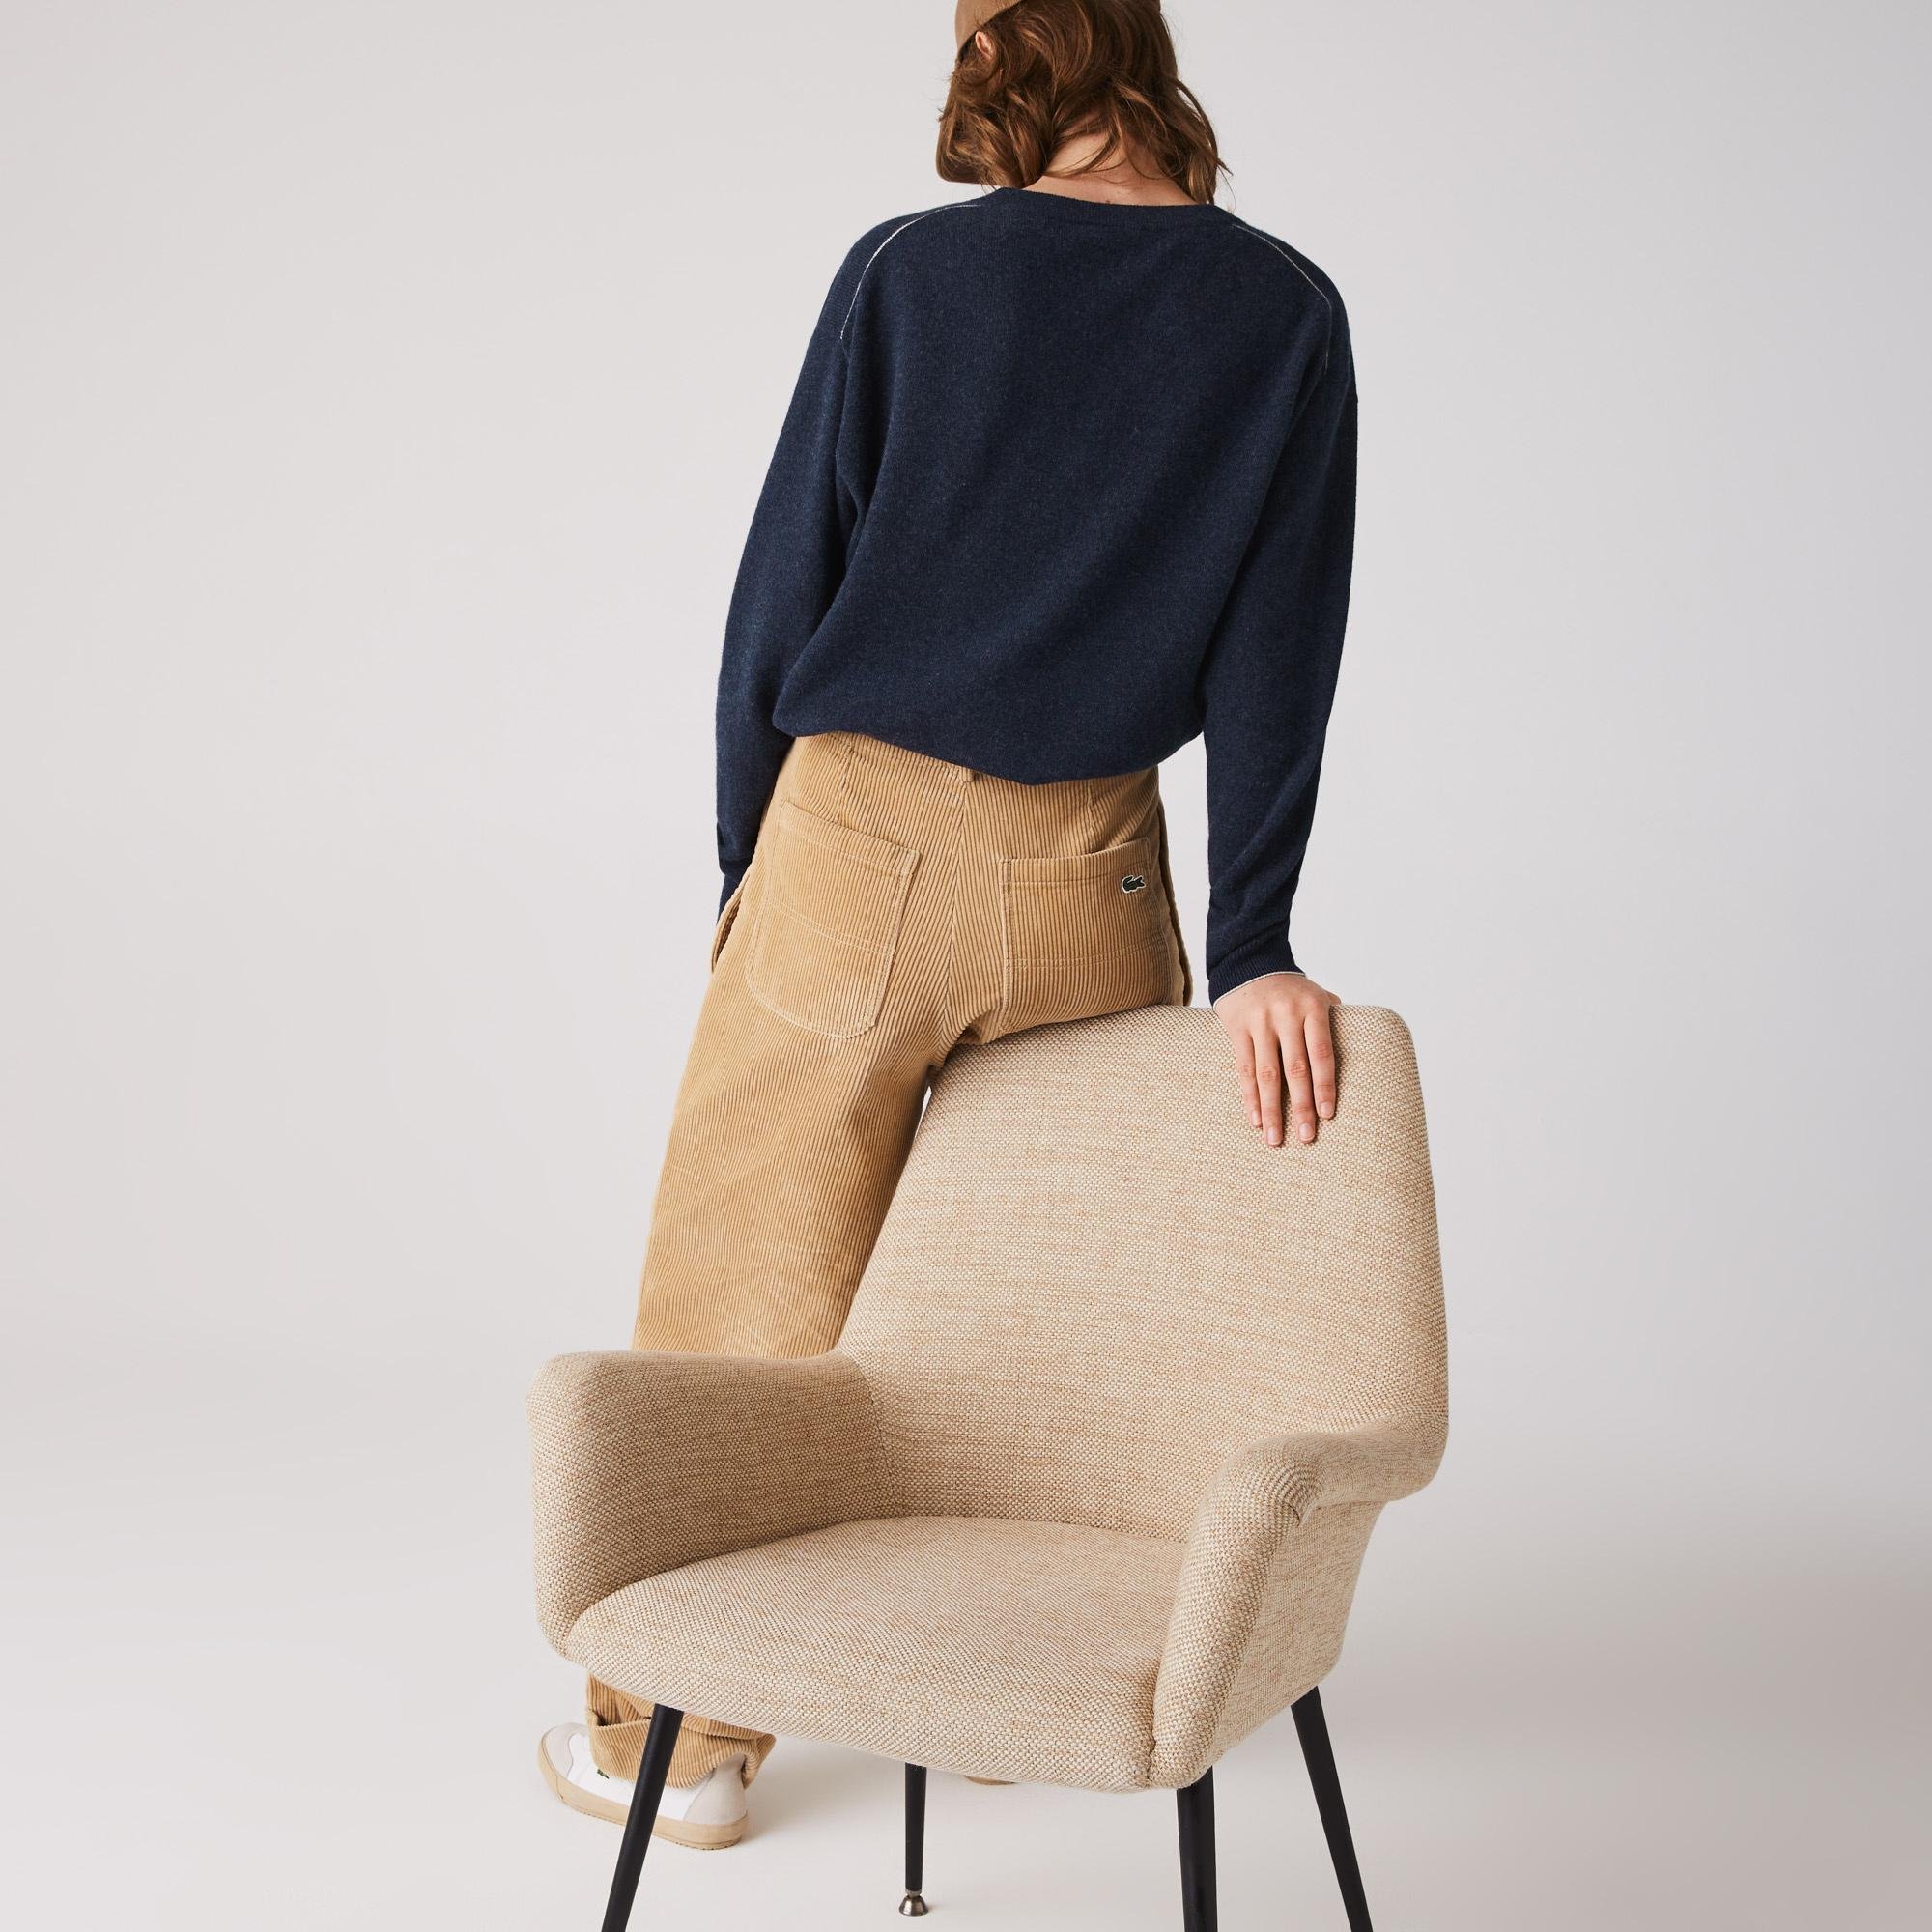 Lacoste Women's V-neck Wool Sweater